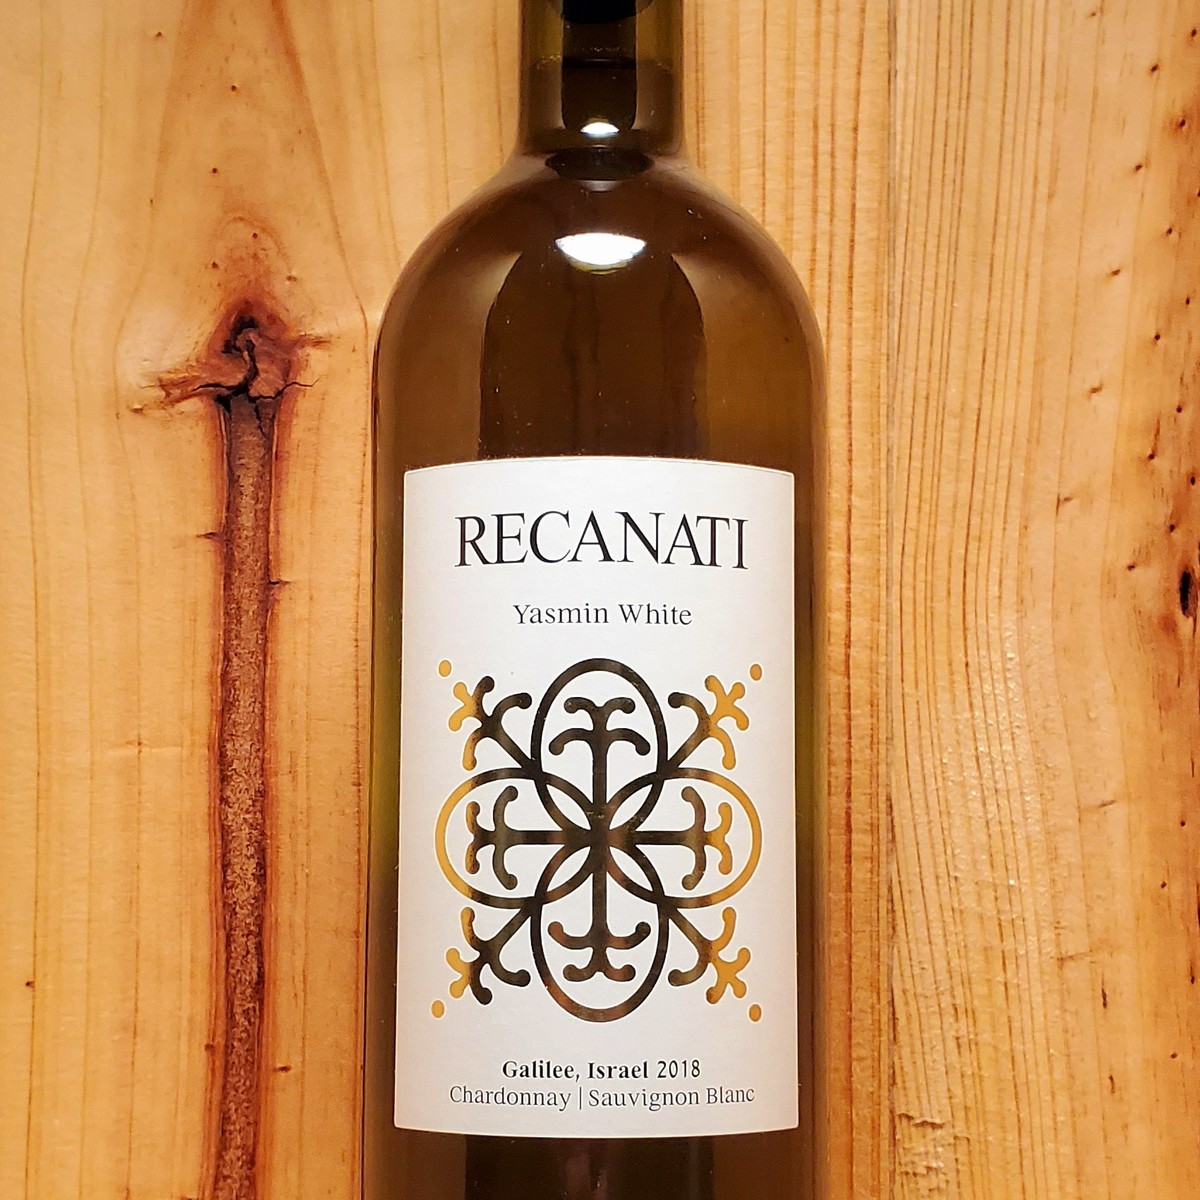 Vietti Moscato d'Asti 2021 Vin Pétillant Italien - Enjoy Wine